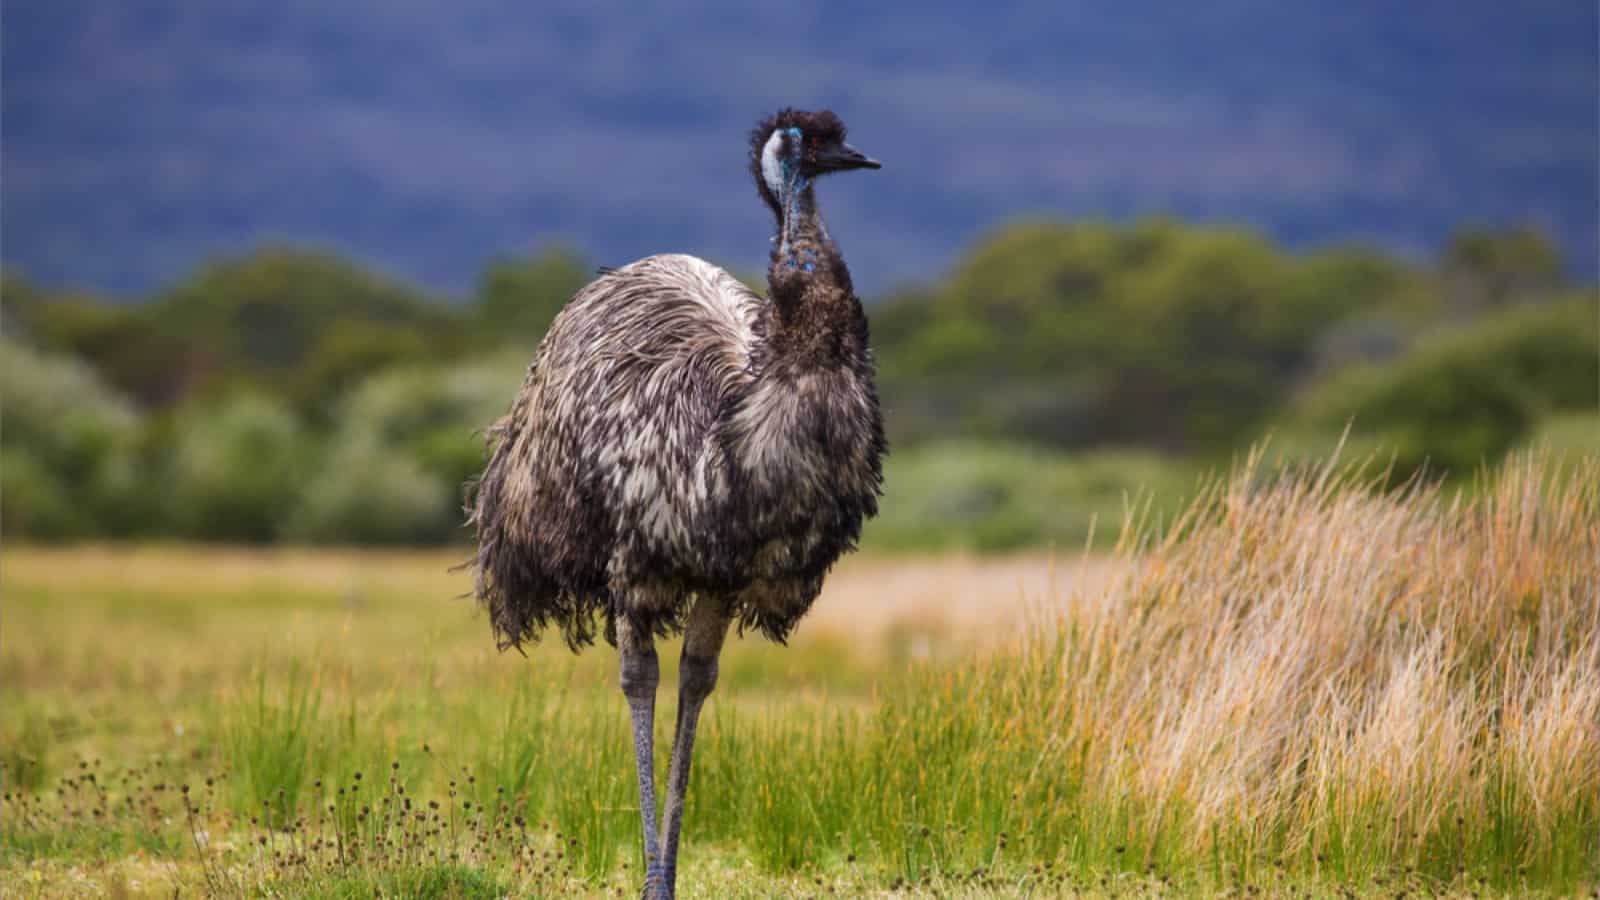 Australia Wild Emu found in national park